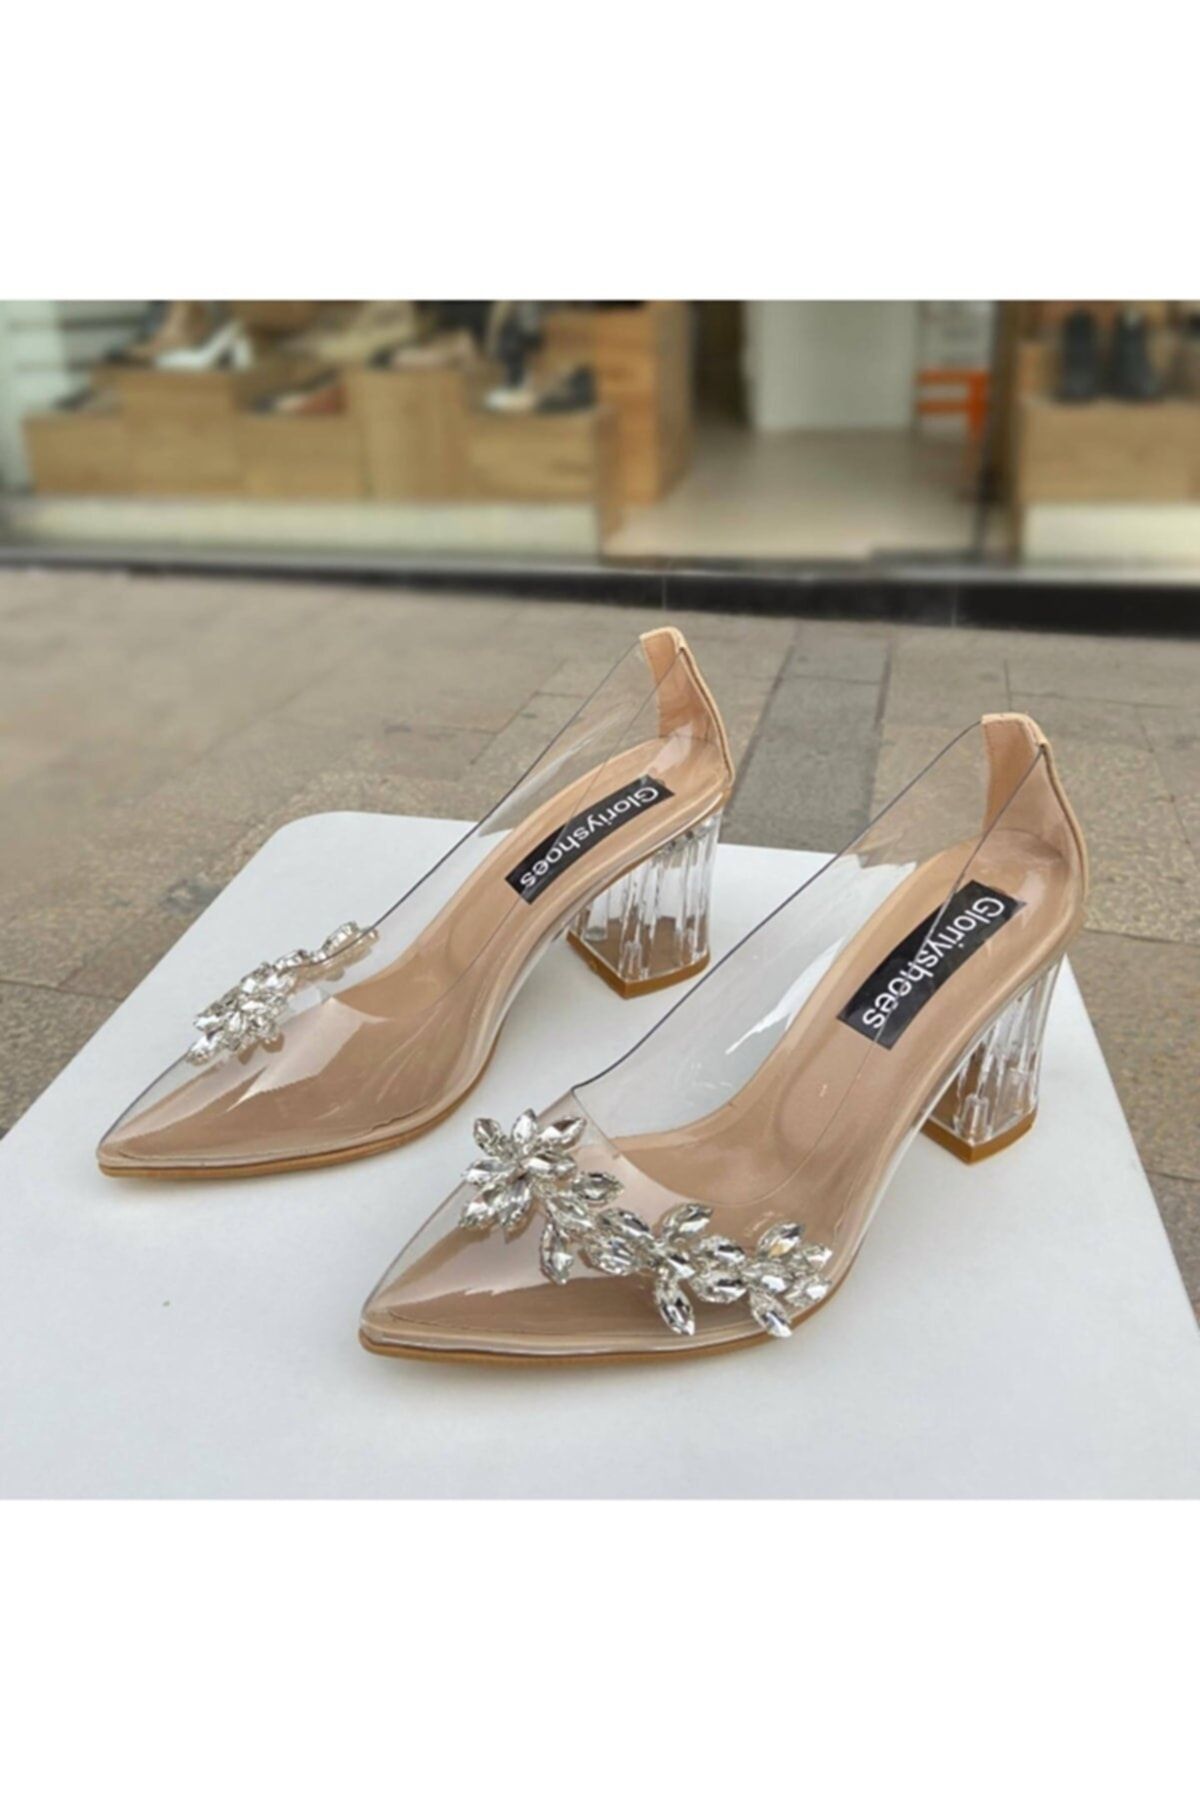 gloriyshoes Kadın Şeffaf Taşlı 6.5 cm Topuklu Ayakkabı